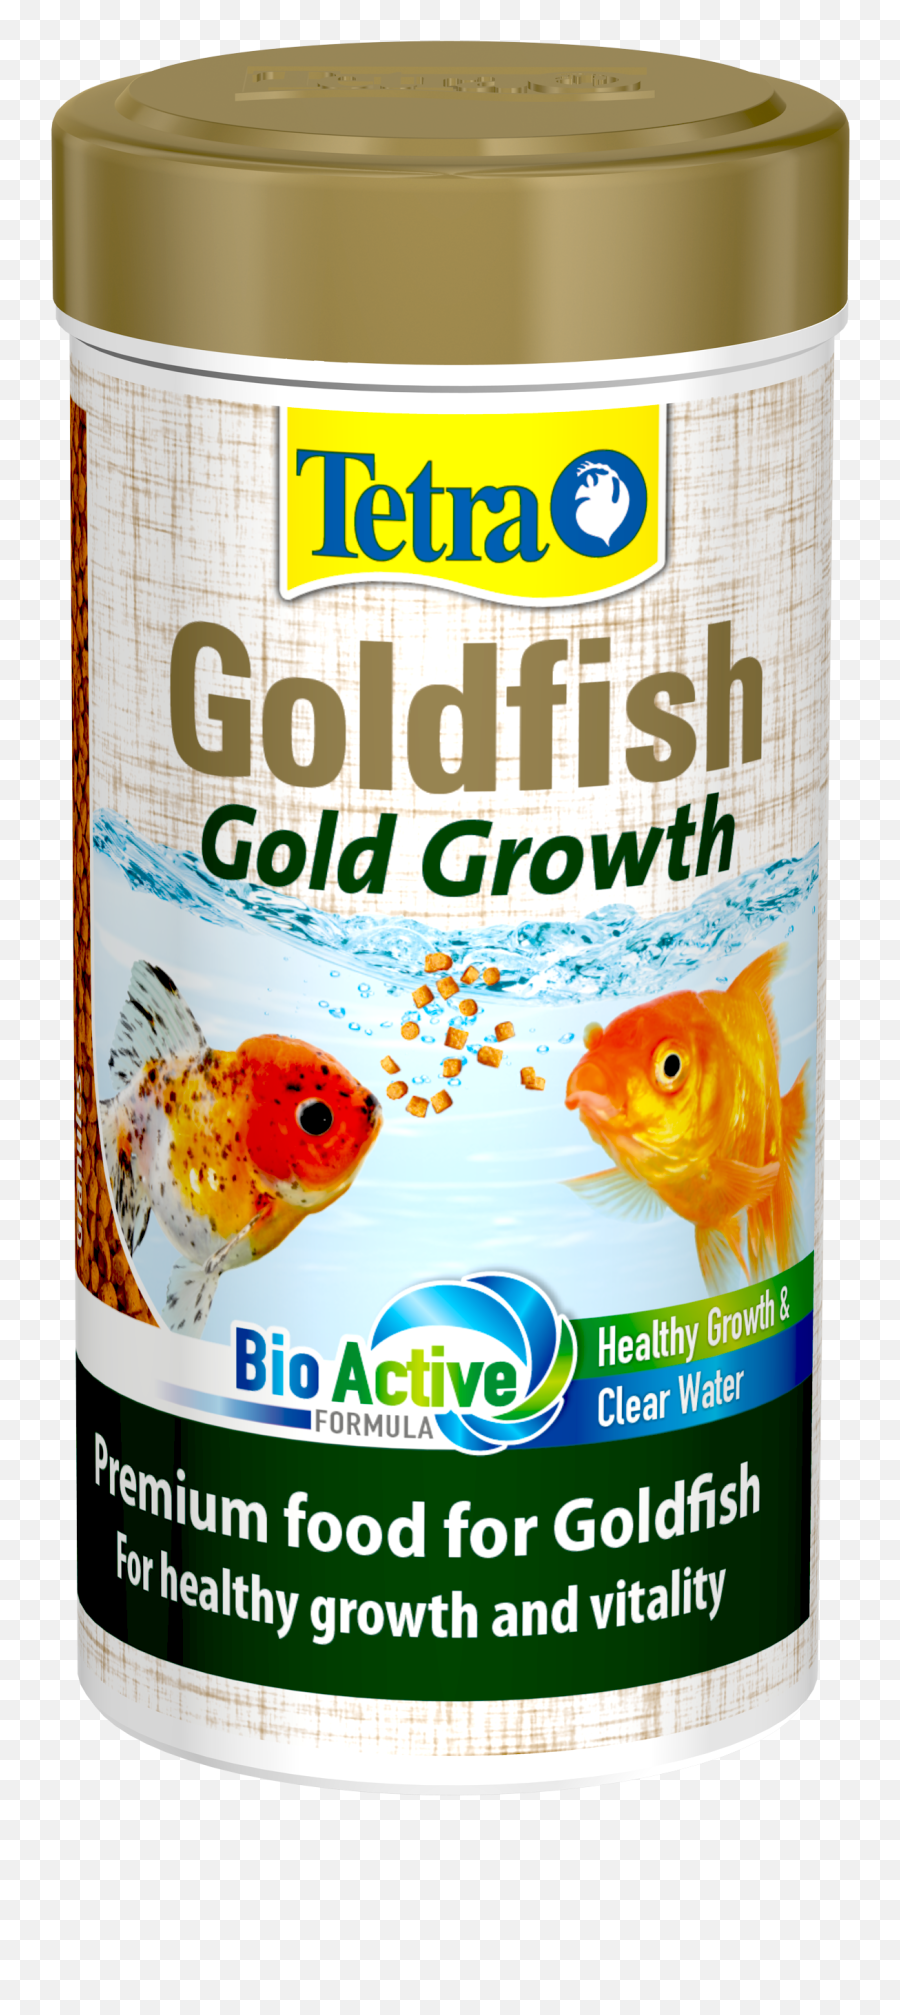 Tetra Goldfish Gold Growth - Goldfish Png,Goldfish Transparent